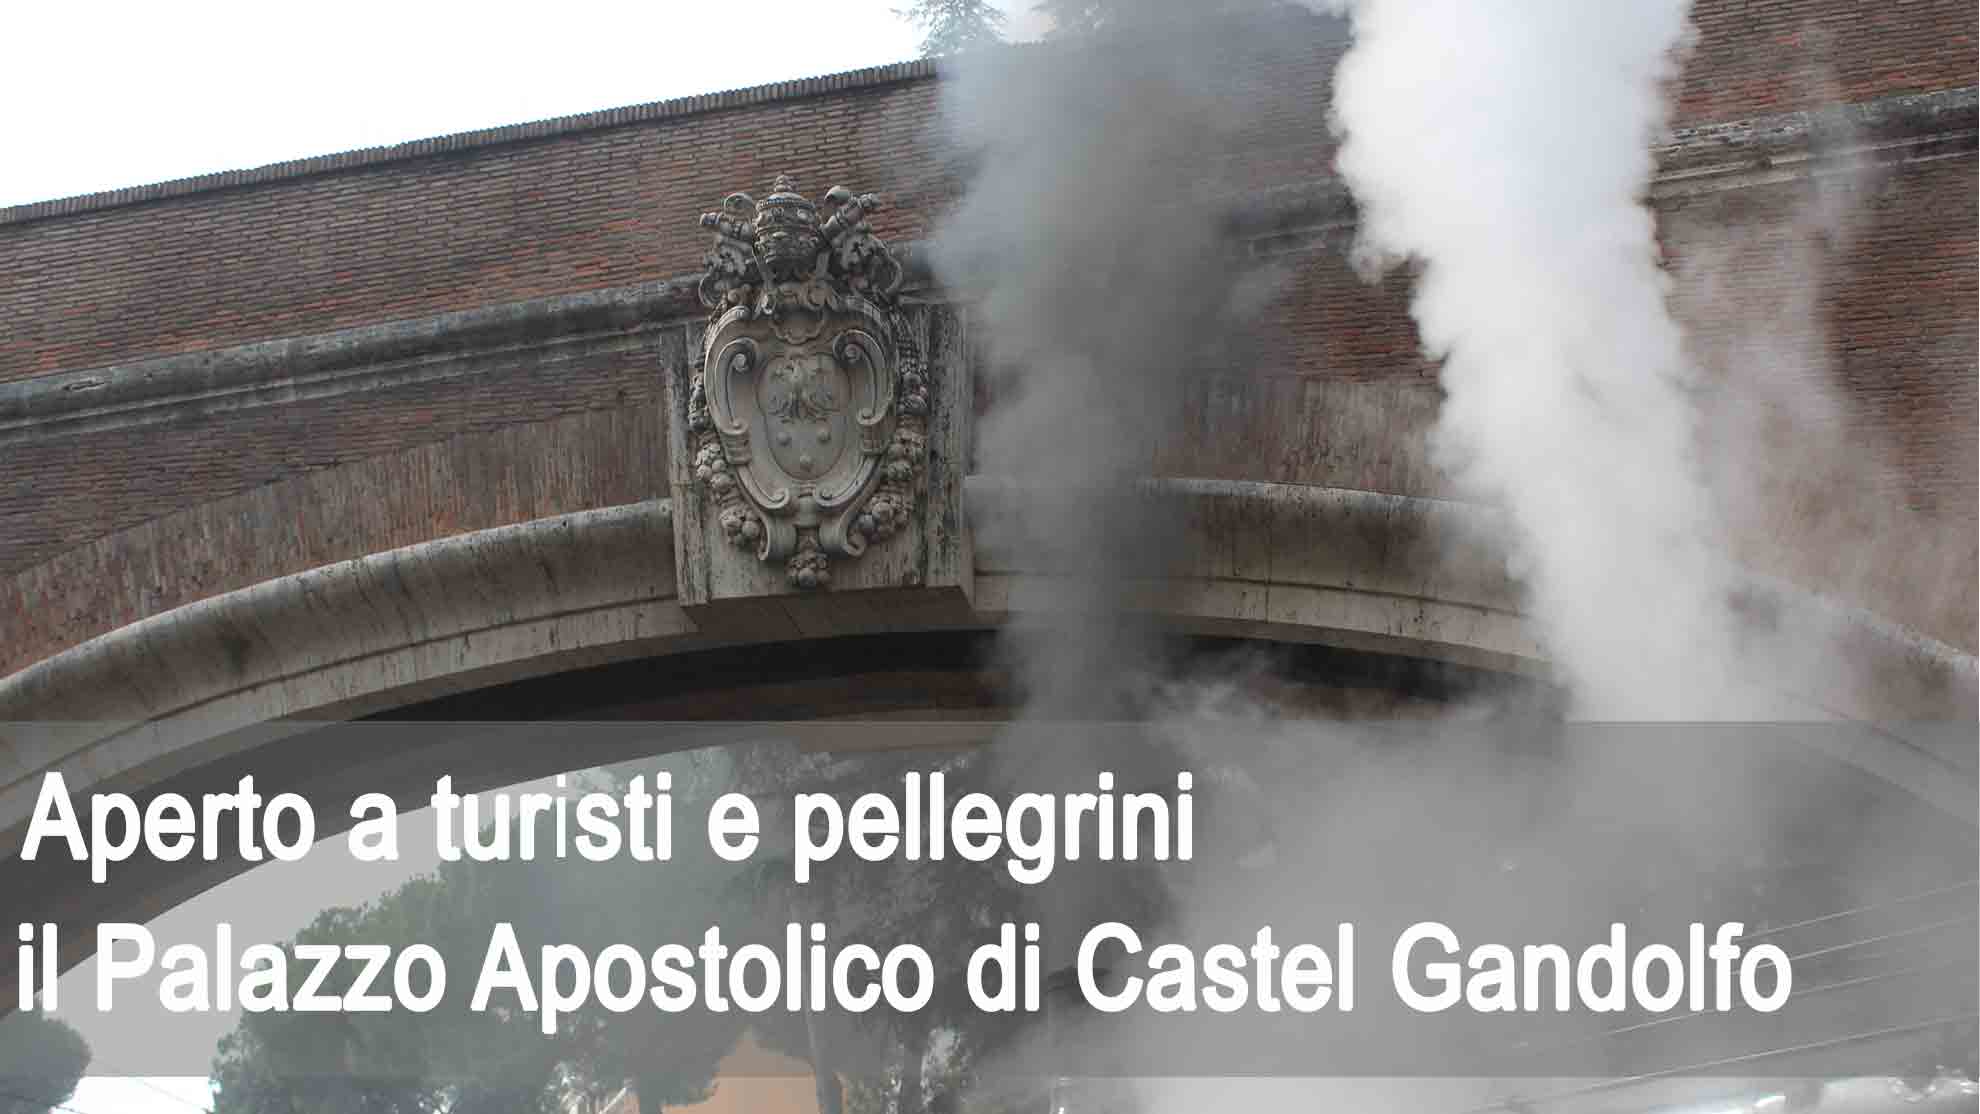 Aperto a turisti e pellegrini il Palazzo Apostolico di Castelgandolfo